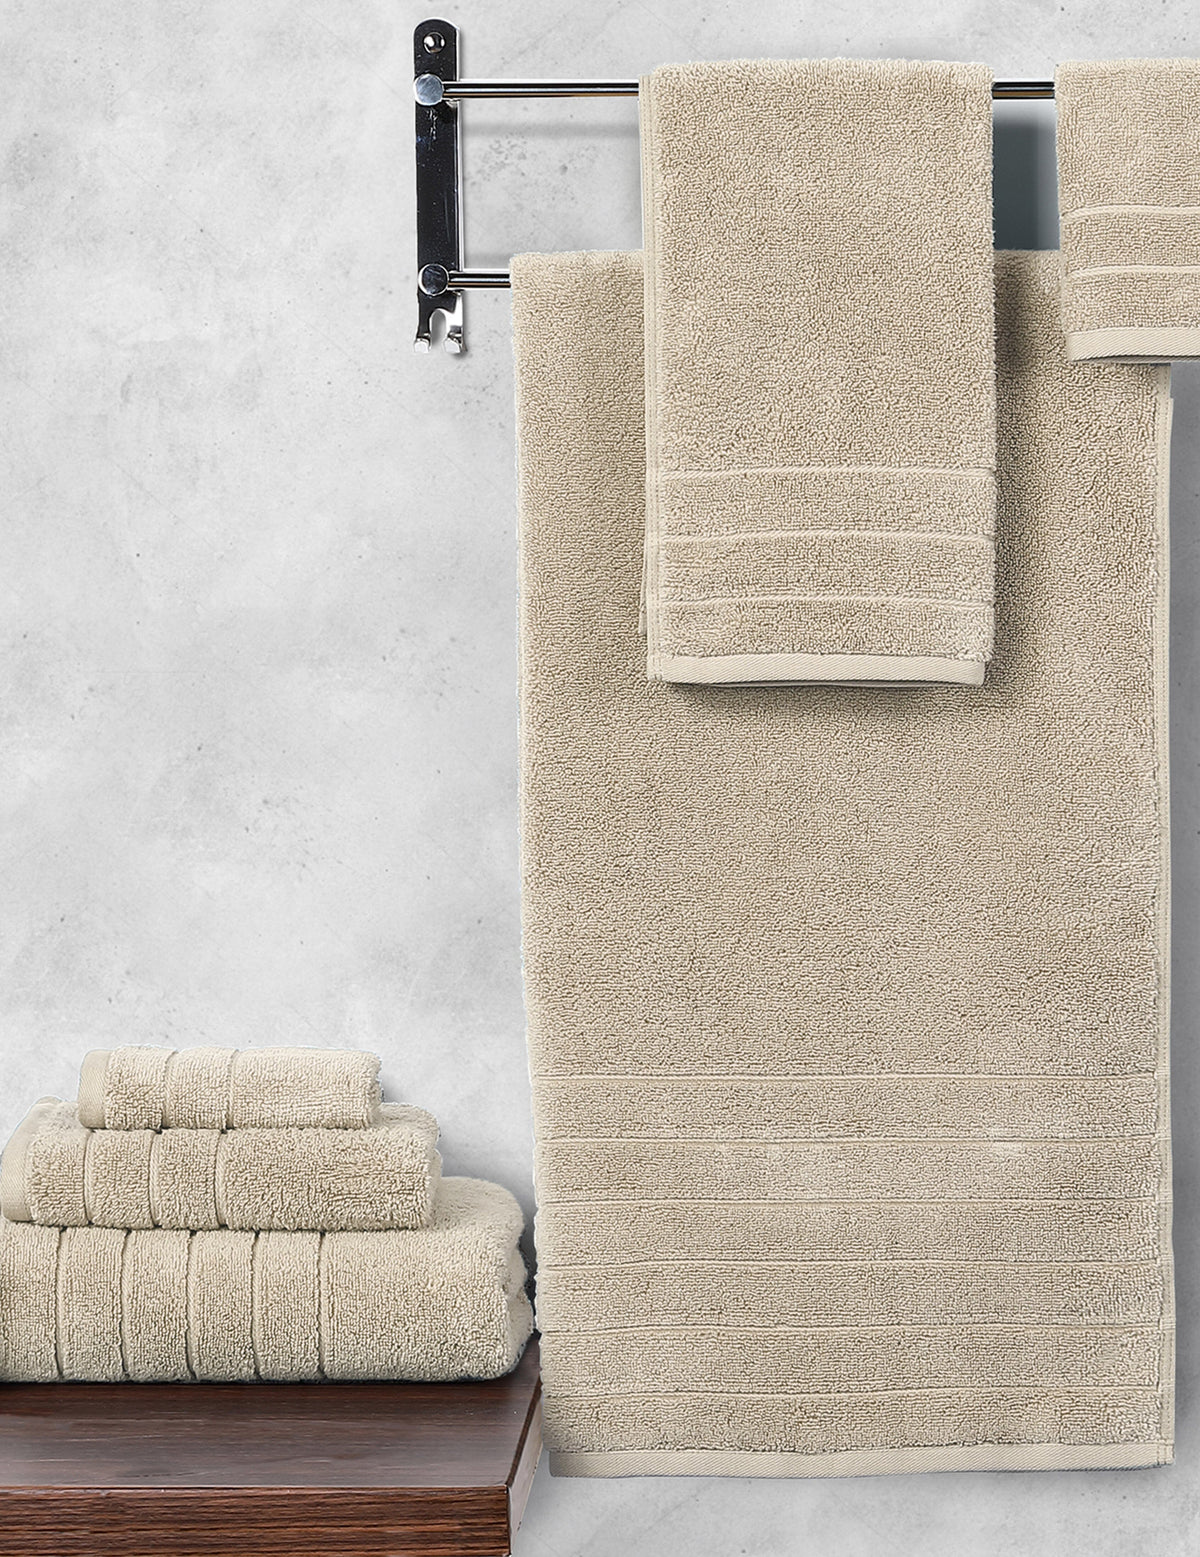 Anne Klein Sand Reverie 6 Piece Towel Set